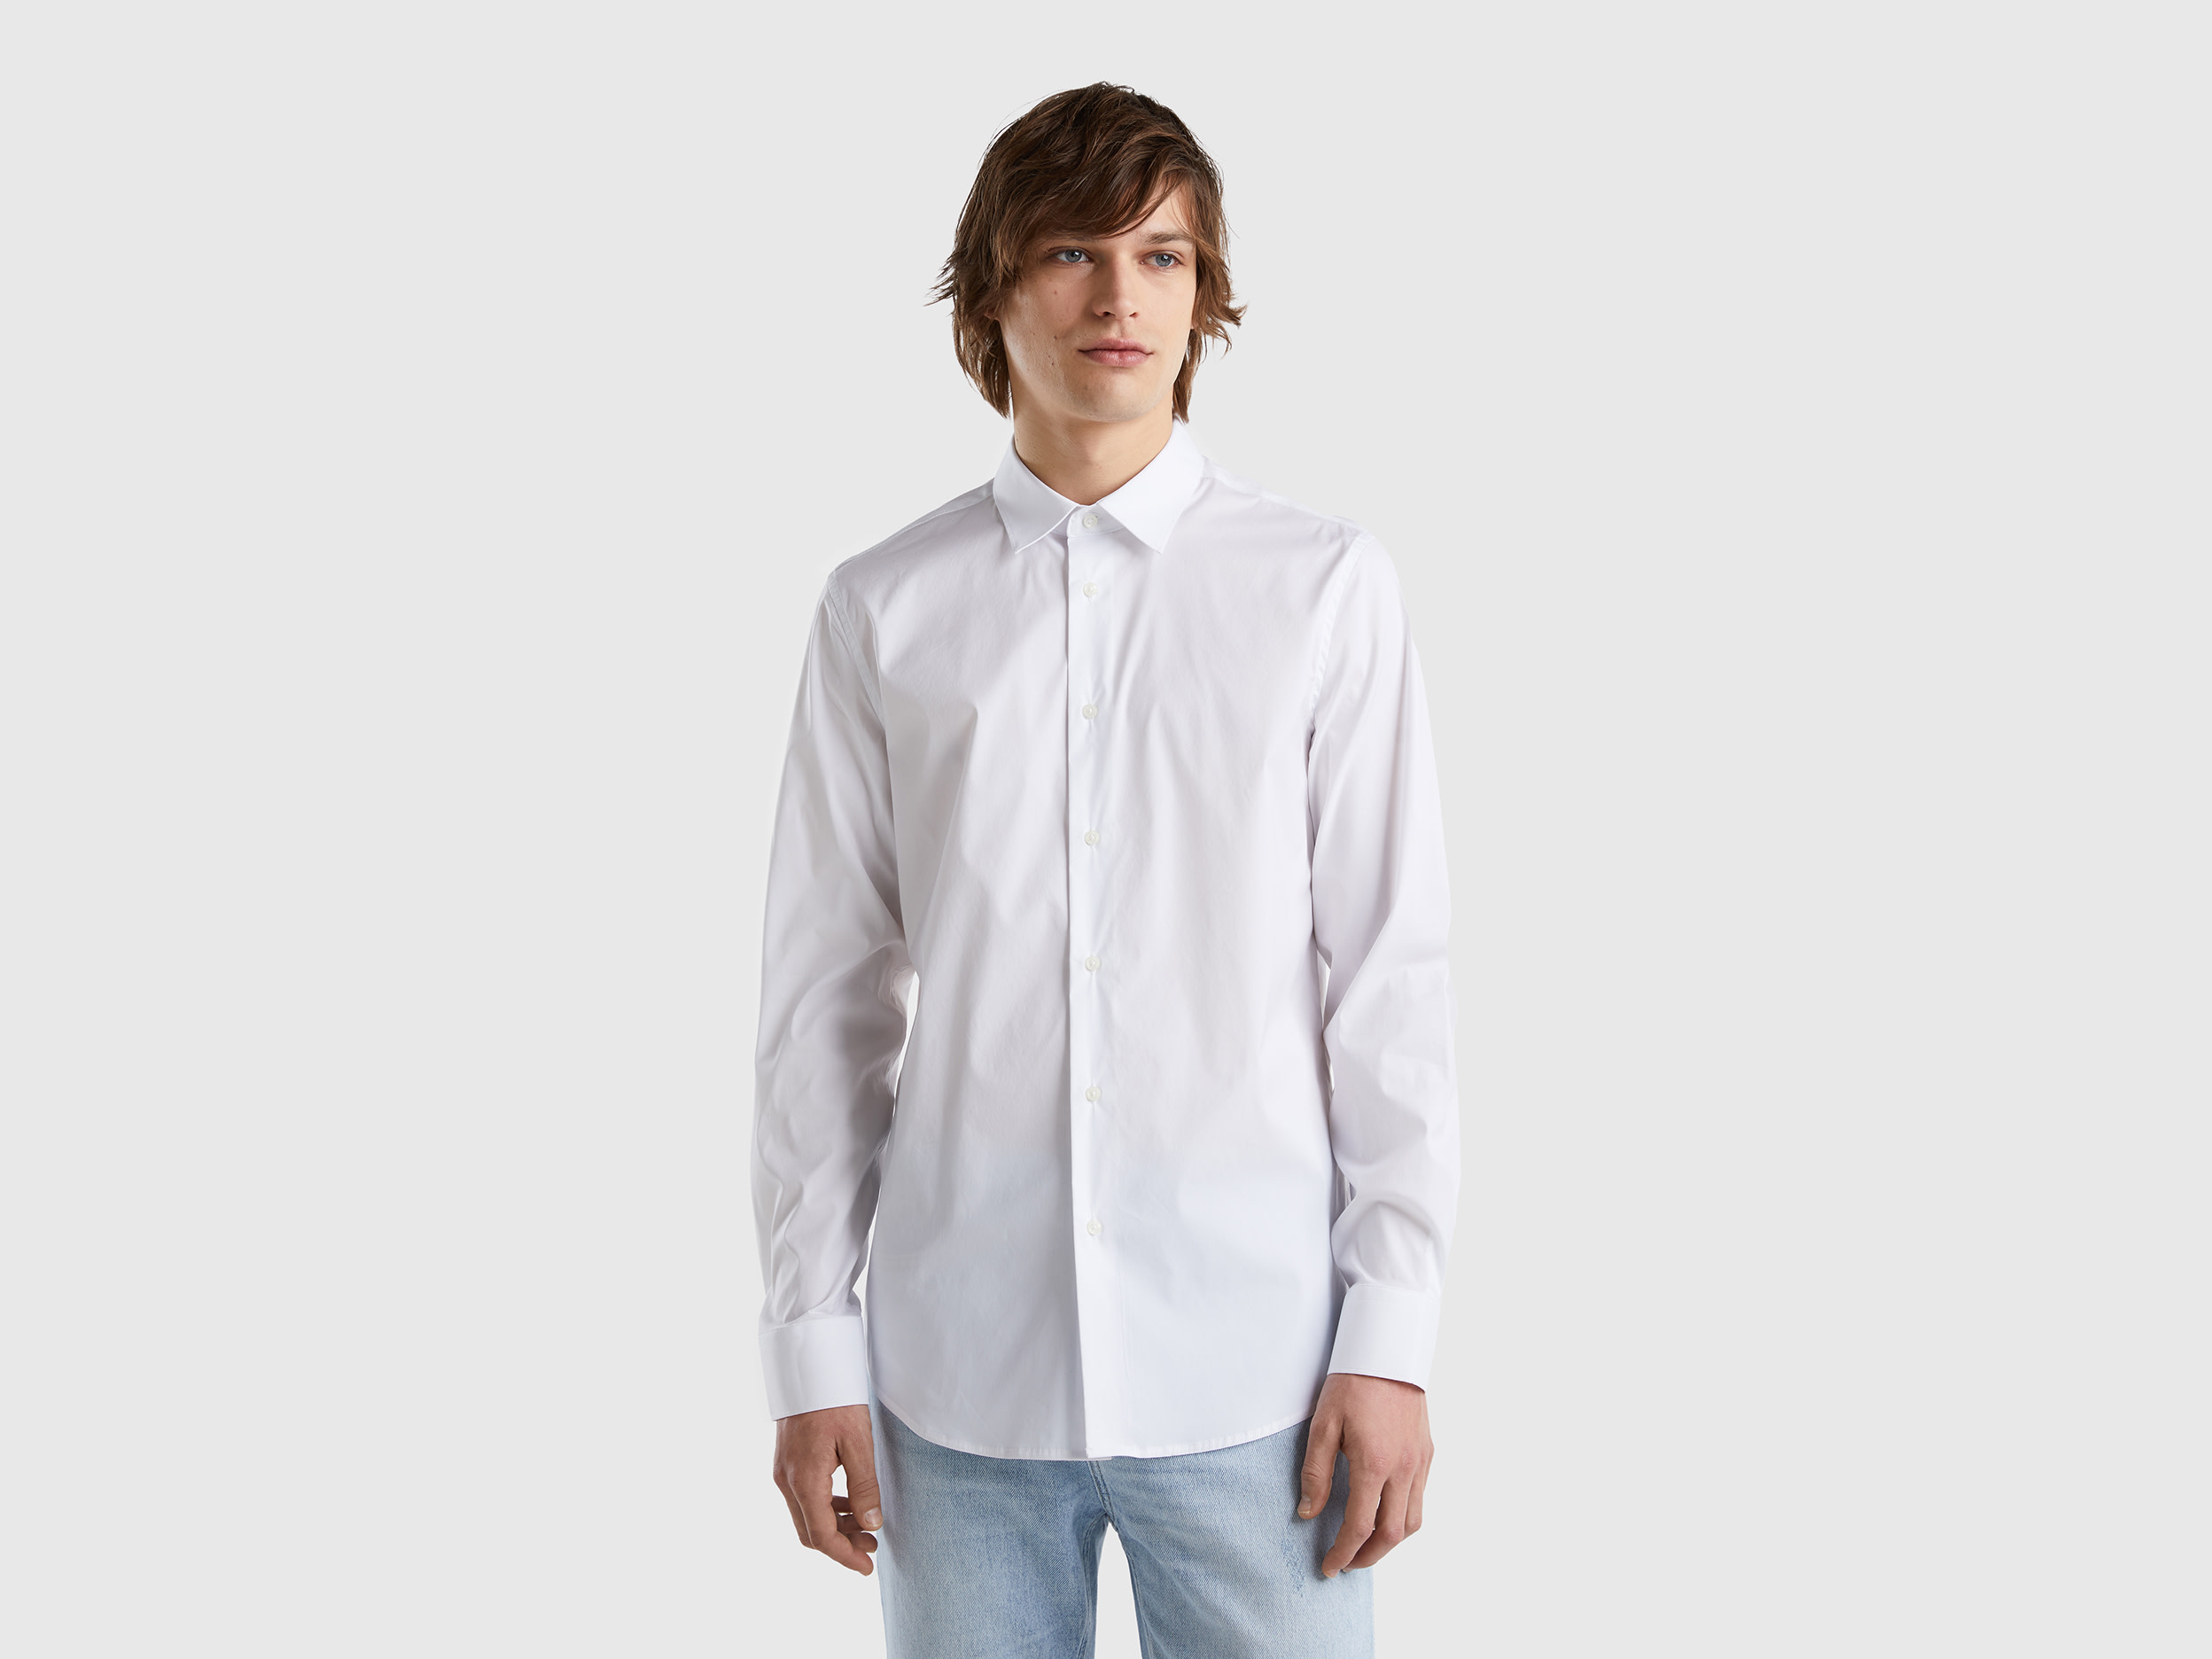 Benetton, Solid Color Slim Fit Shirt, size XXXL, White, Men